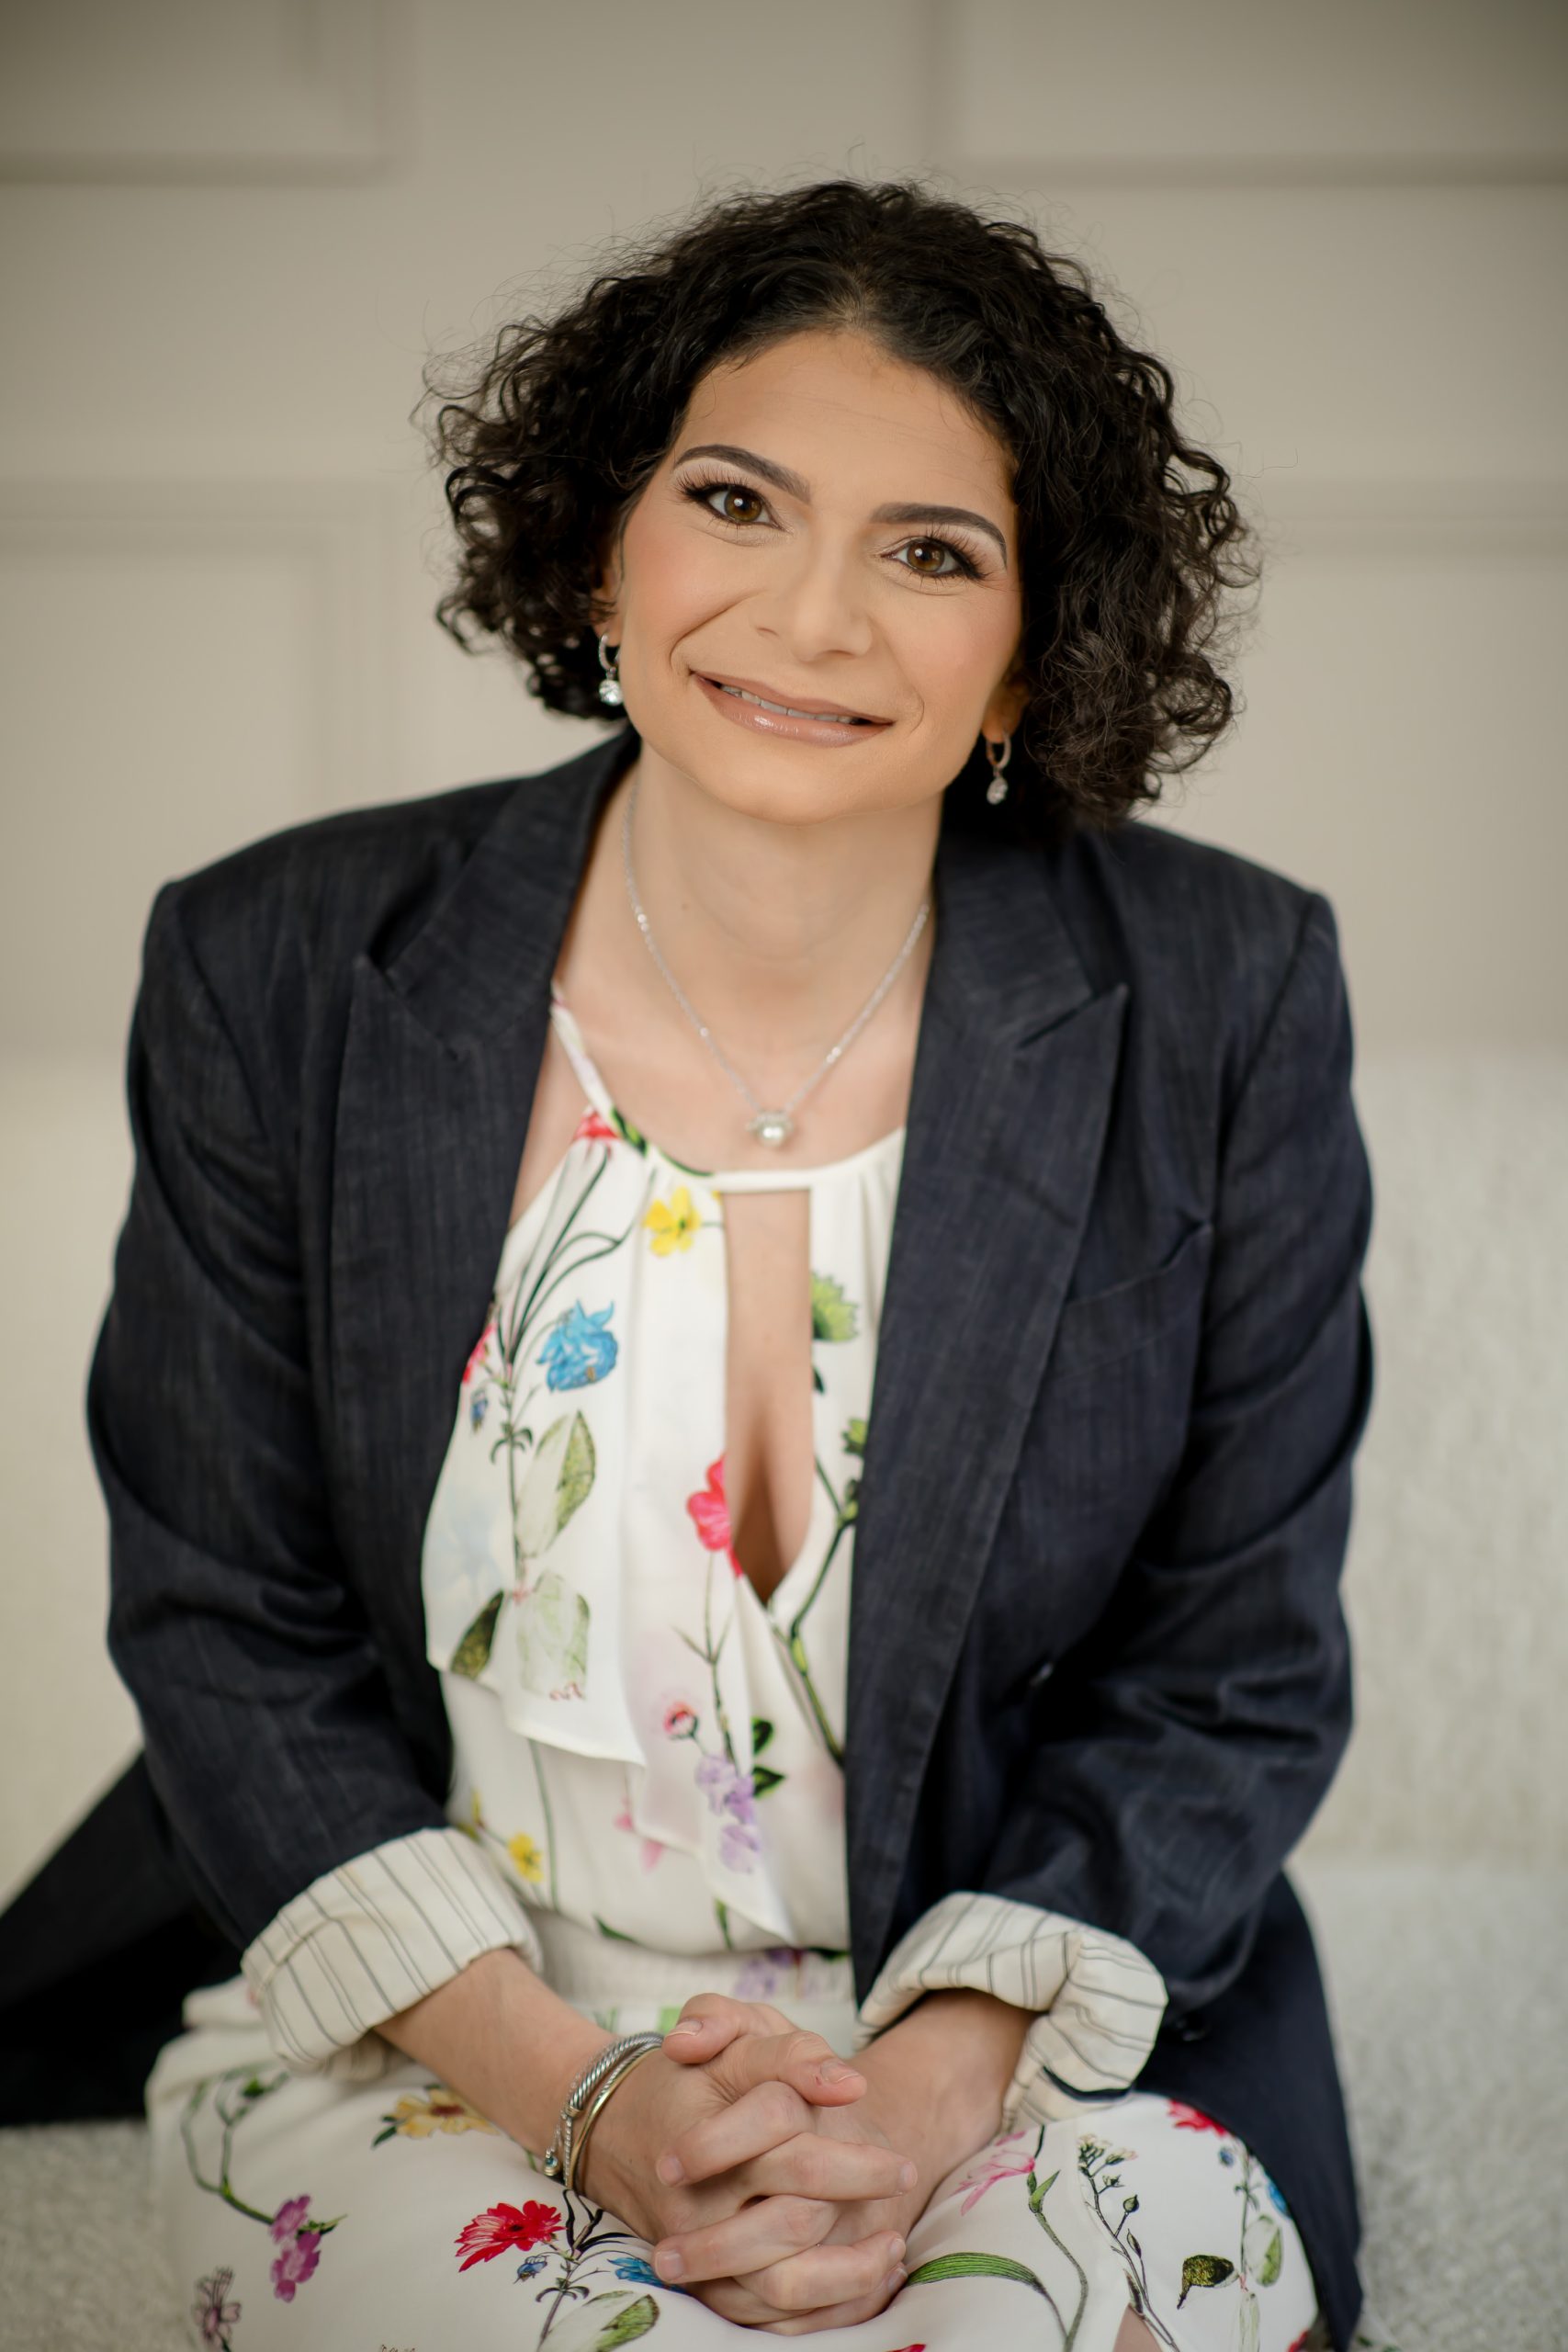 Dr. Samantha Schindelheim